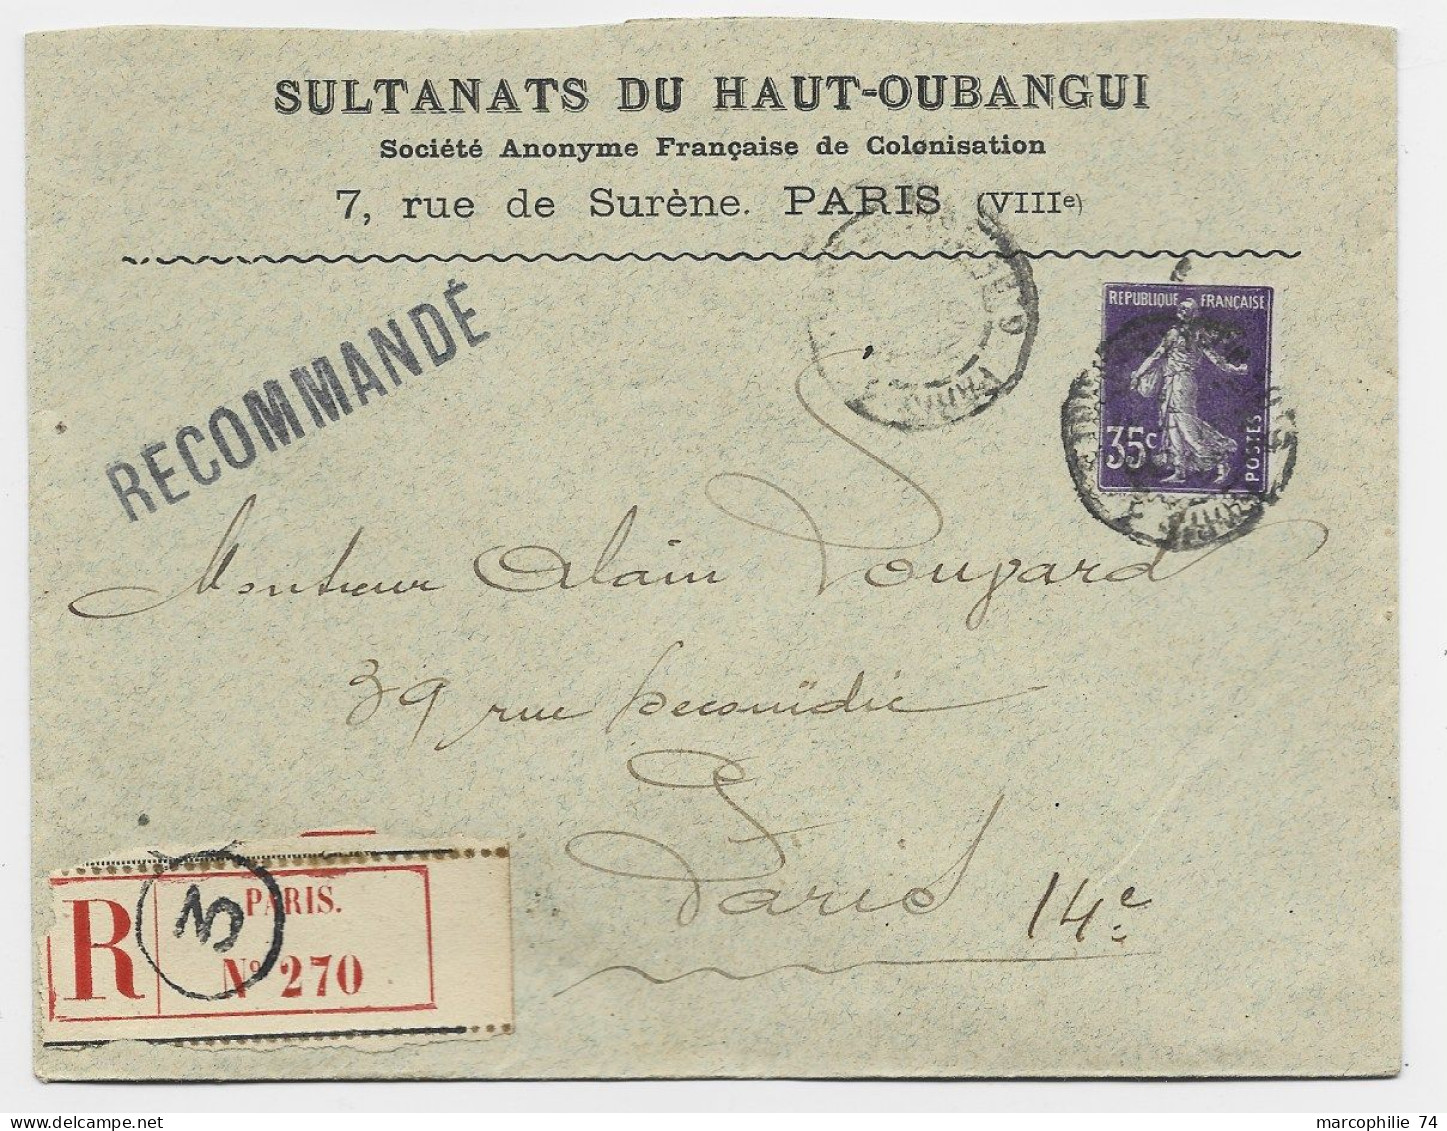 FRANCE SEMEUSE 35C LETTRE REC COVER ENTETE SULTANATS DU HAUT OUBANGUI PARIS VIIIE 1914 - Covers & Documents